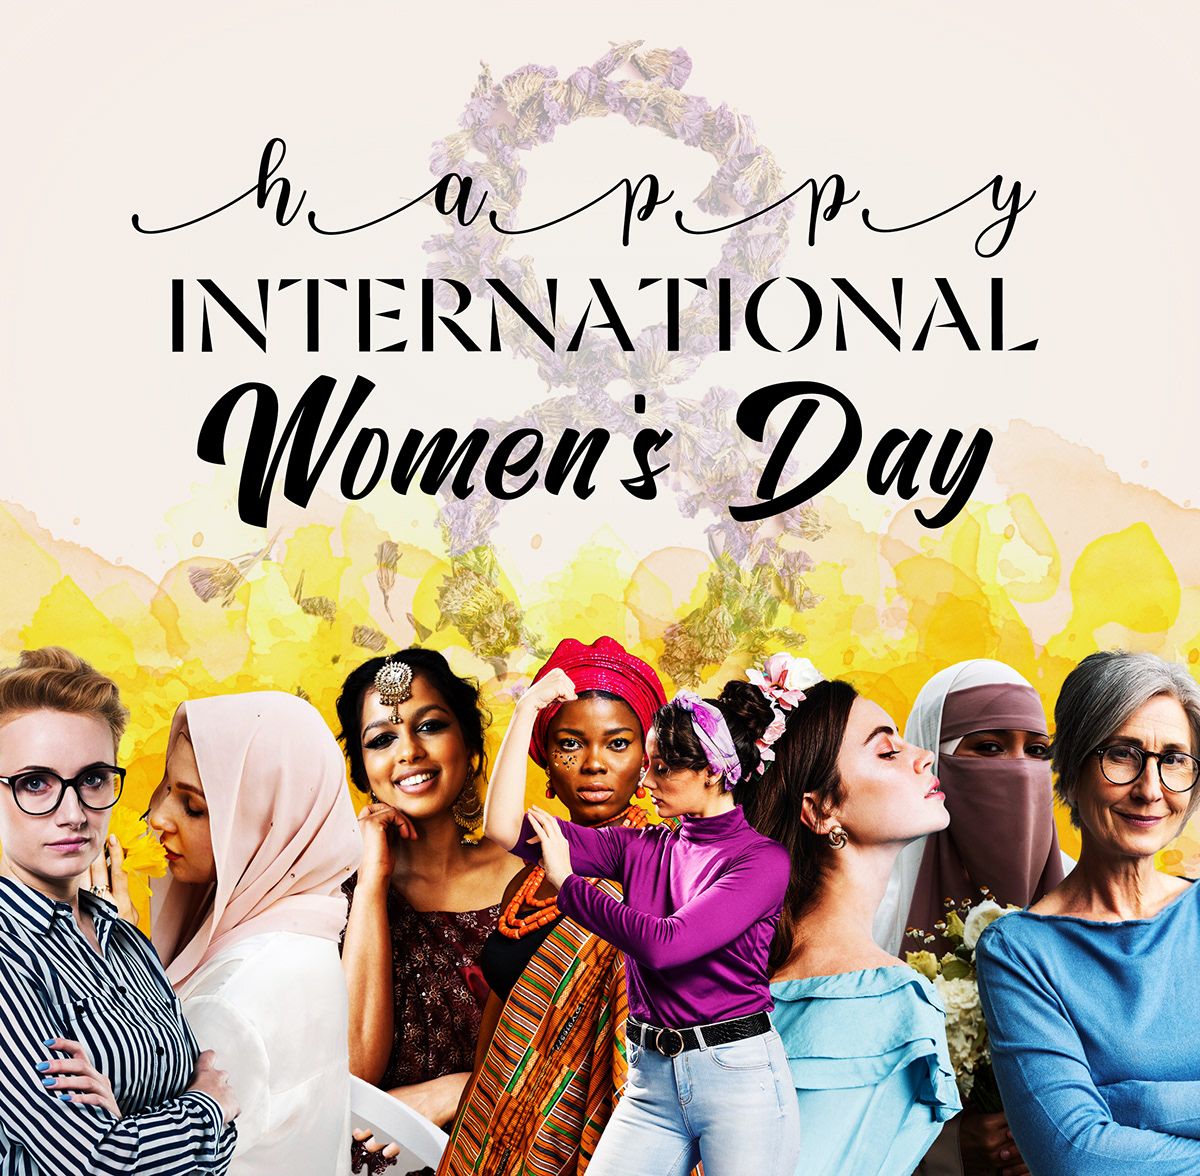 8 march Social media post Socialmedia Graphic Designer women kadınlar günü International Women's Day womens day women's international day